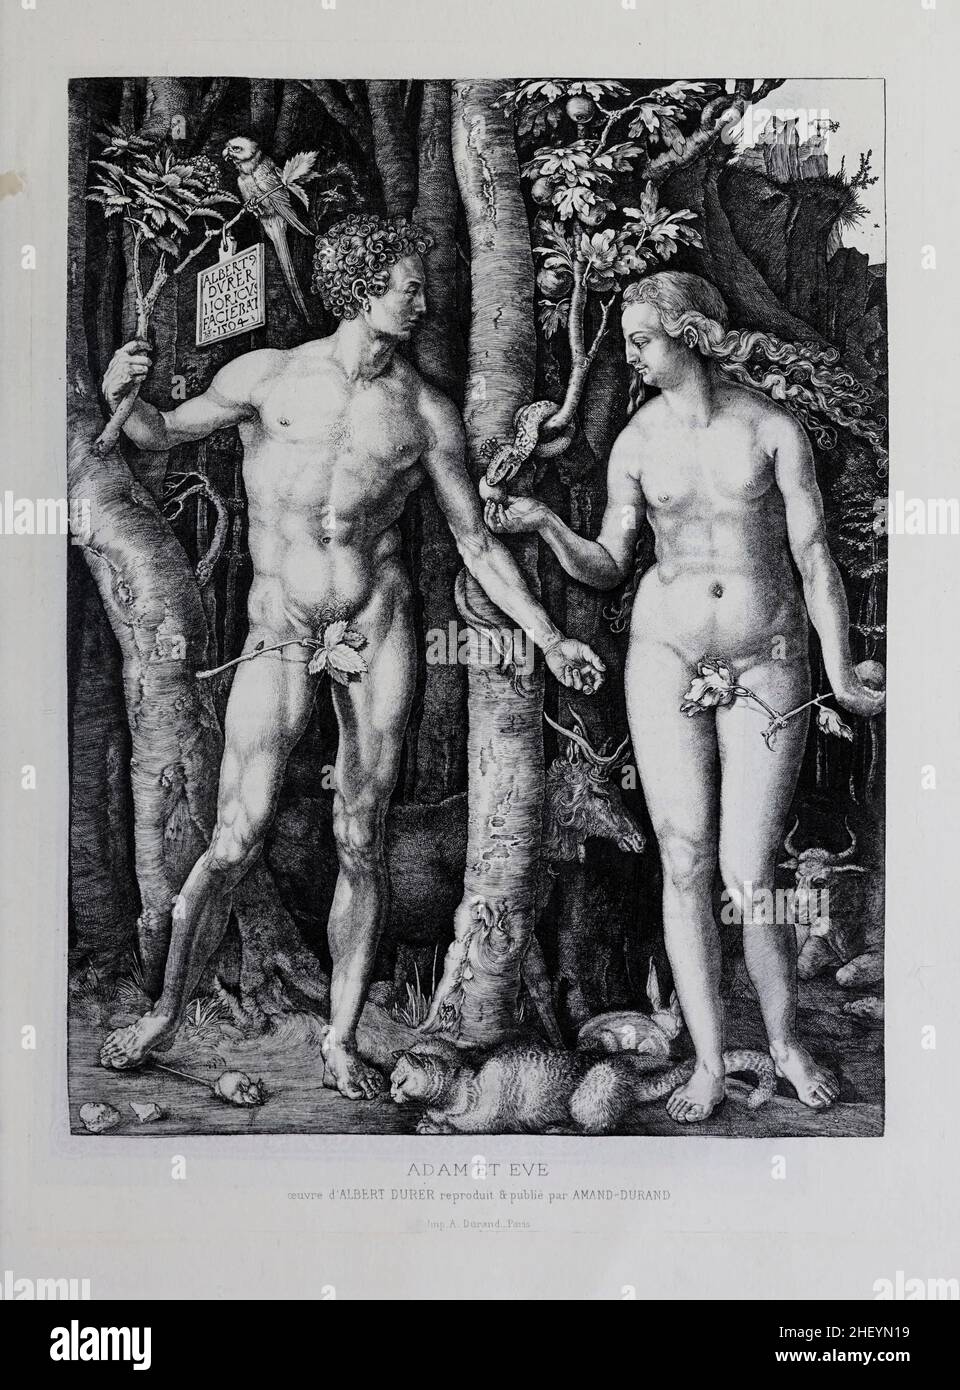 Adam et Eve dans le catalogue des gravures et gravures du jardin d'Eden.France 1881 Banque D'Images